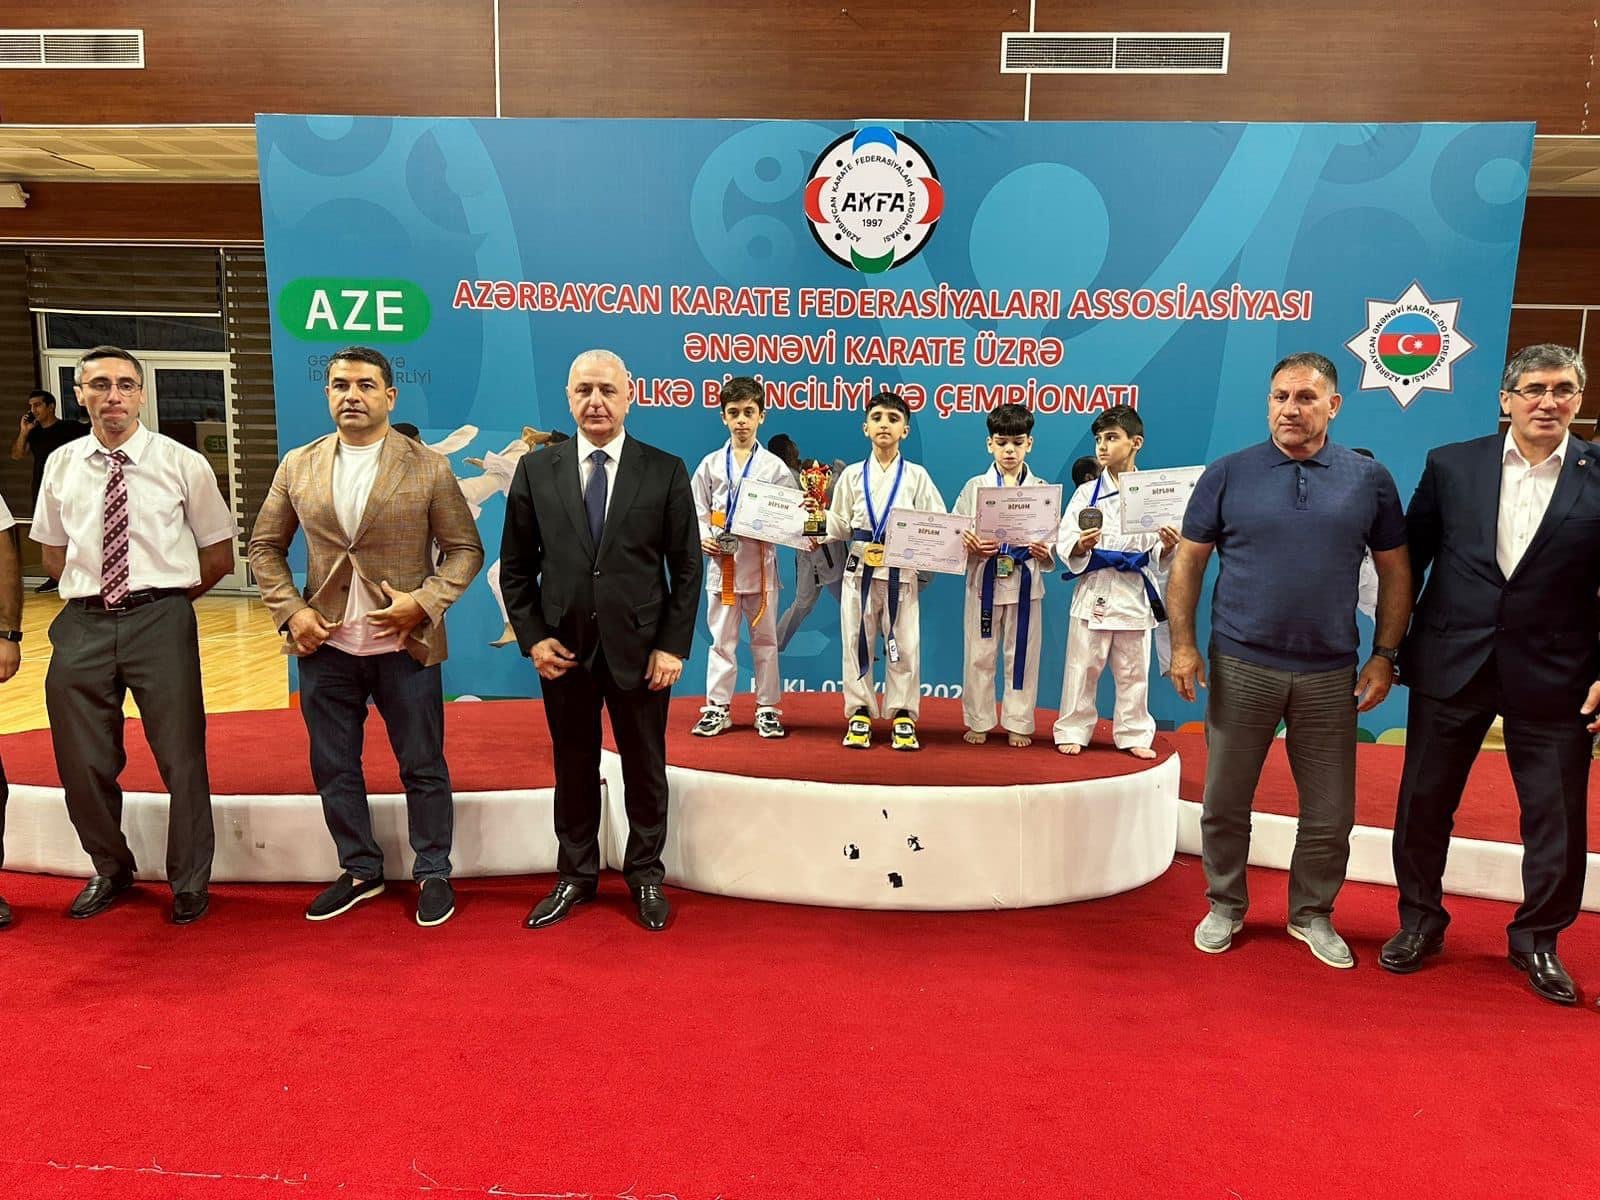 Azərbaycan Karate Federasiyaları Assosiasiyasının təşkilatçılığı ilə ənənəvi karate üzrə Ölkə Birinciliyi və Çempionatı keçirilib -